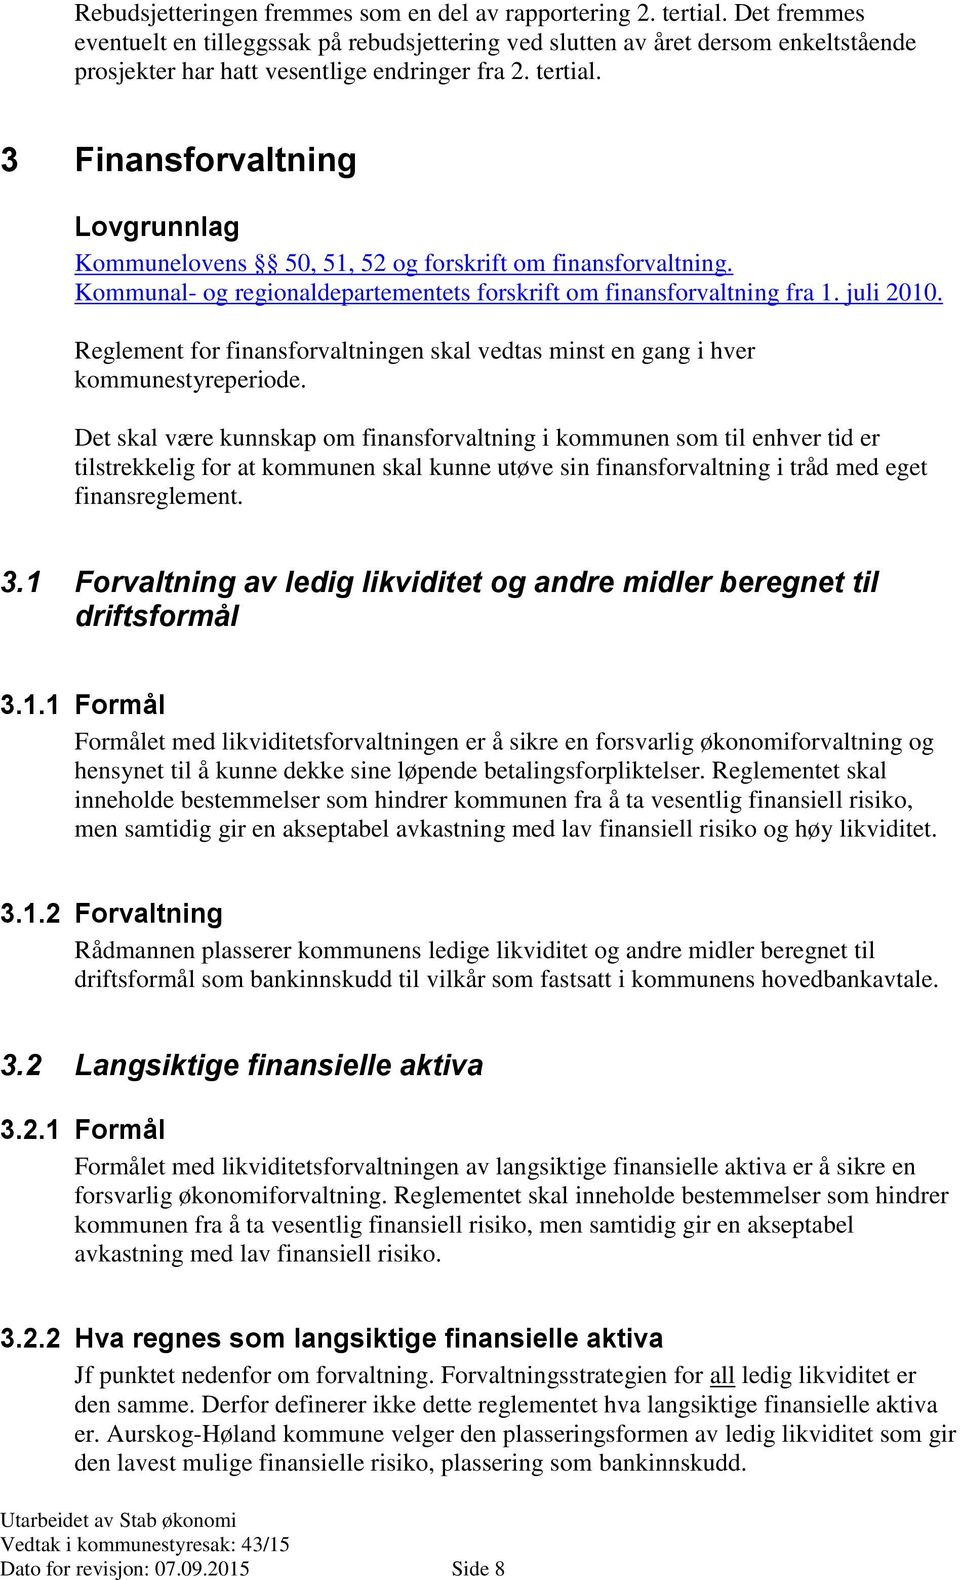 3 Finansforvaltning Lovgrunnlag Kommunelovens 50, 51, 52 og forskrift om finansforvaltning. Kommunal- og regionaldepartementets forskrift om finansforvaltning fra 1. juli 2010.